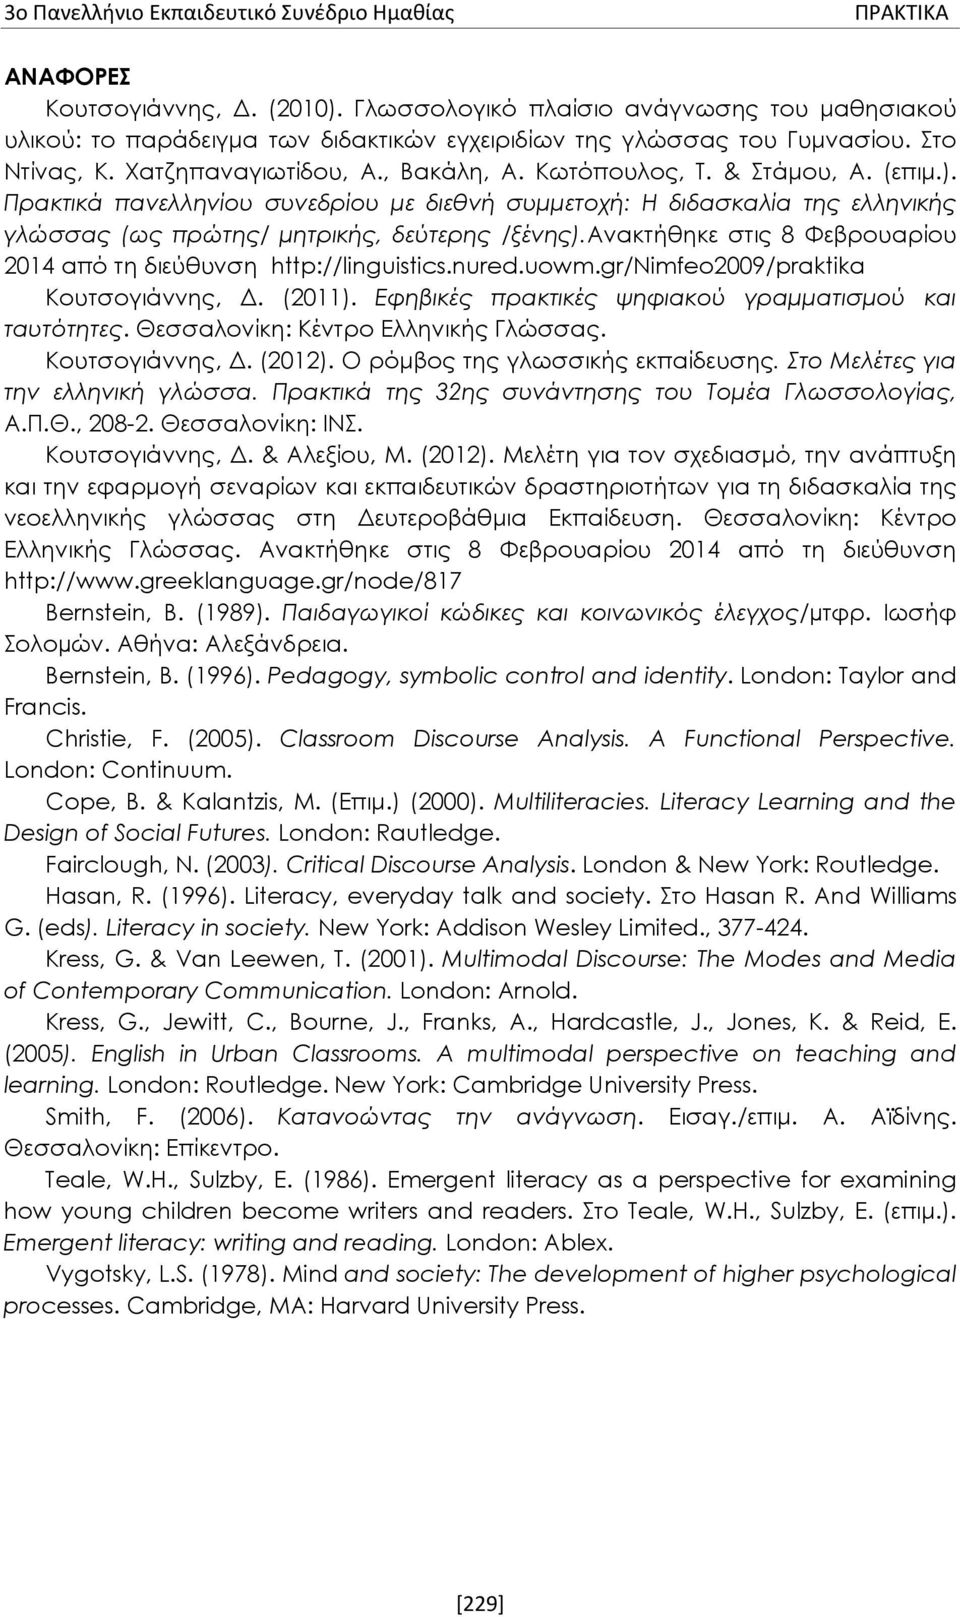 ανακτήθηκε στις 8 Φεβρουαρίου 2014 από τη διεύθυνση http://linguistics.nured.uowm.gr/nimfeo2009/praktika Κουτσογιάννης, Δ. (2011). Εφηβικές πρακτικές ψηφιακού γραμματισμού και ταυτότητες.